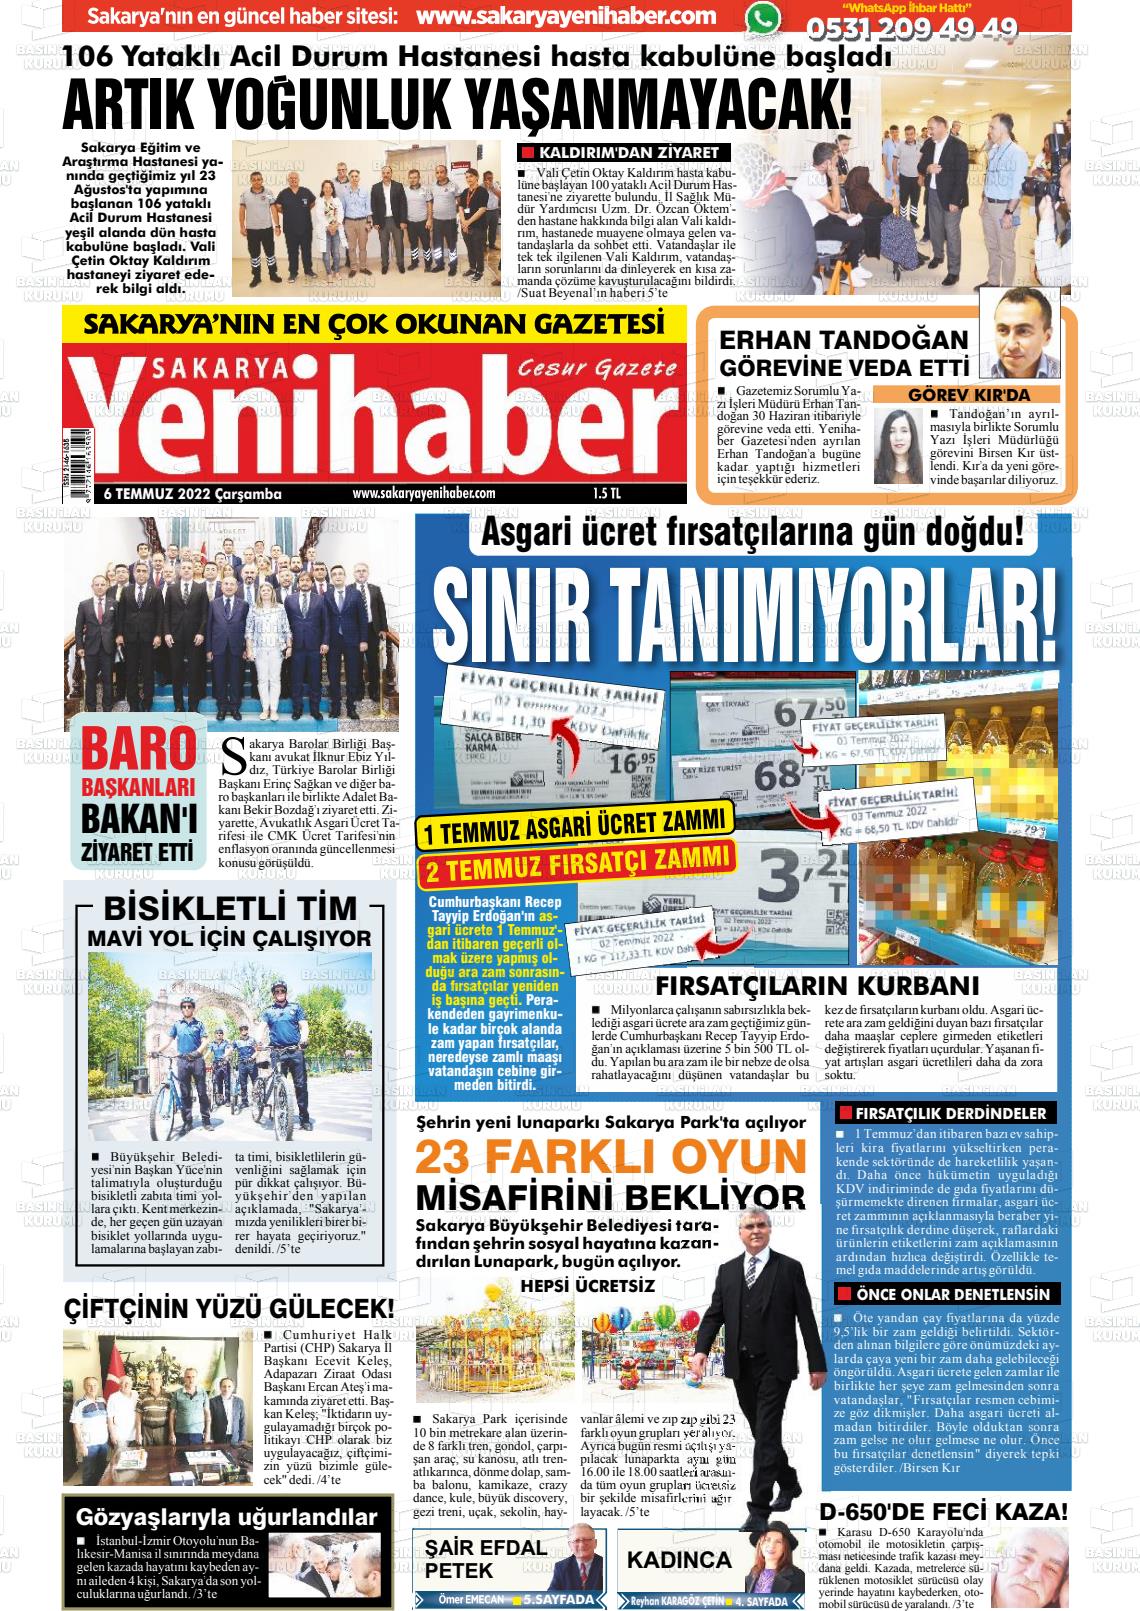 06 Temmuz 2022 Sakarya Yeni Haber Gazete Manşeti